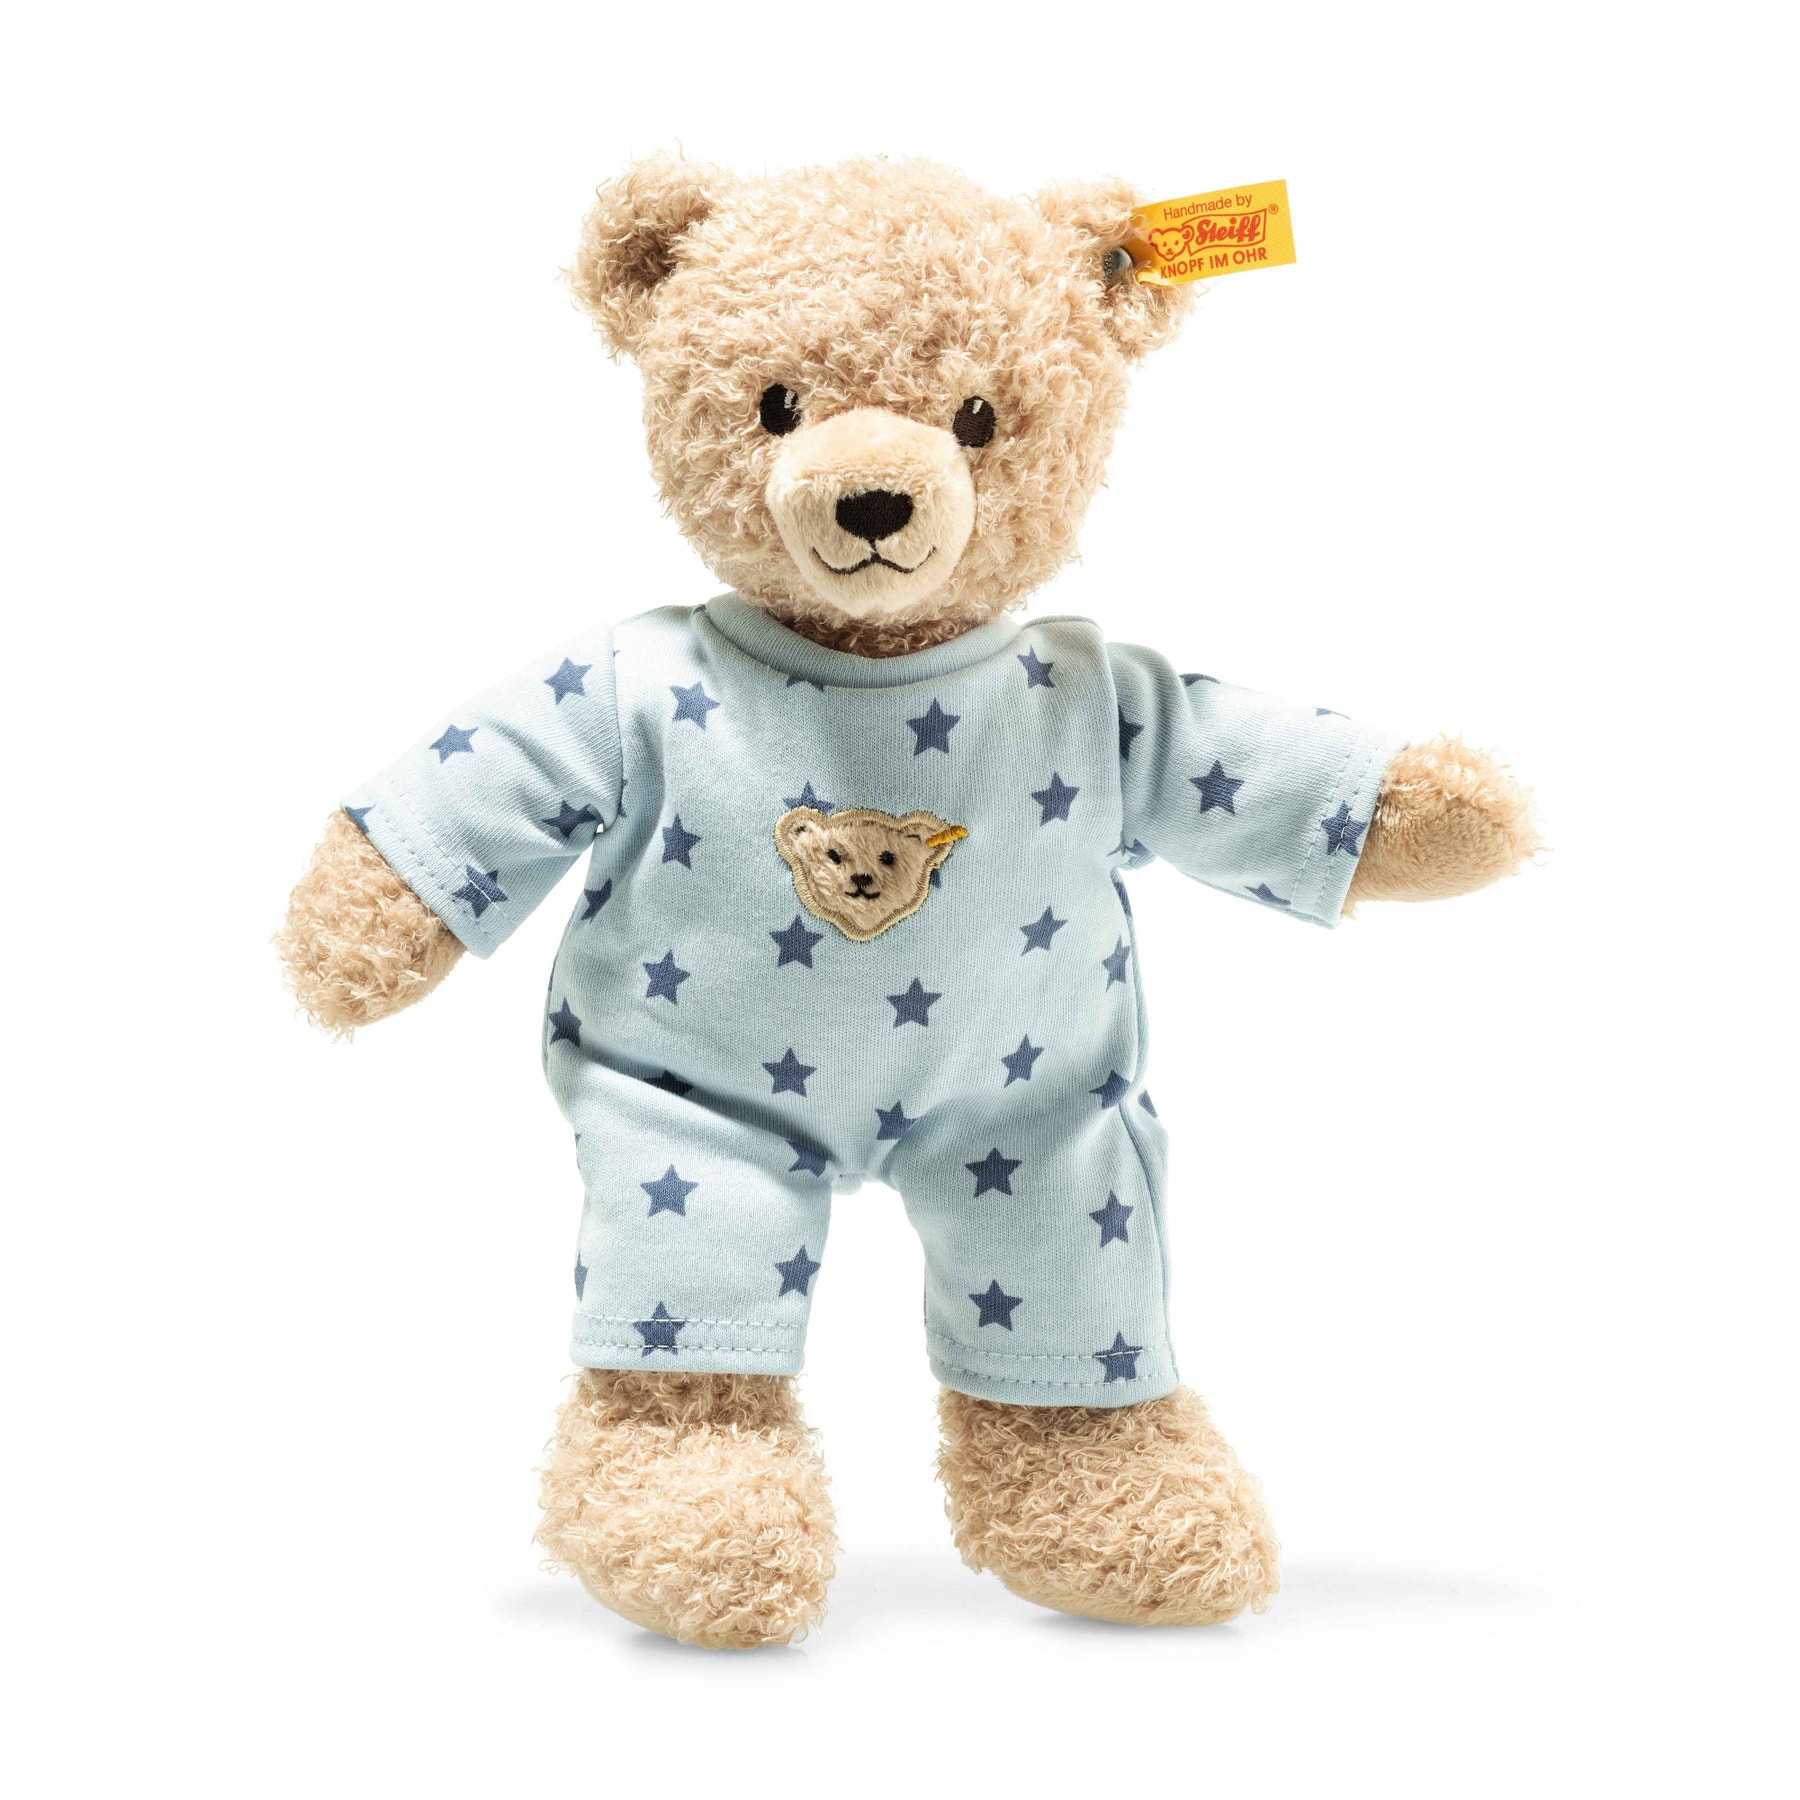 Teddy bear boy baby with pyjama